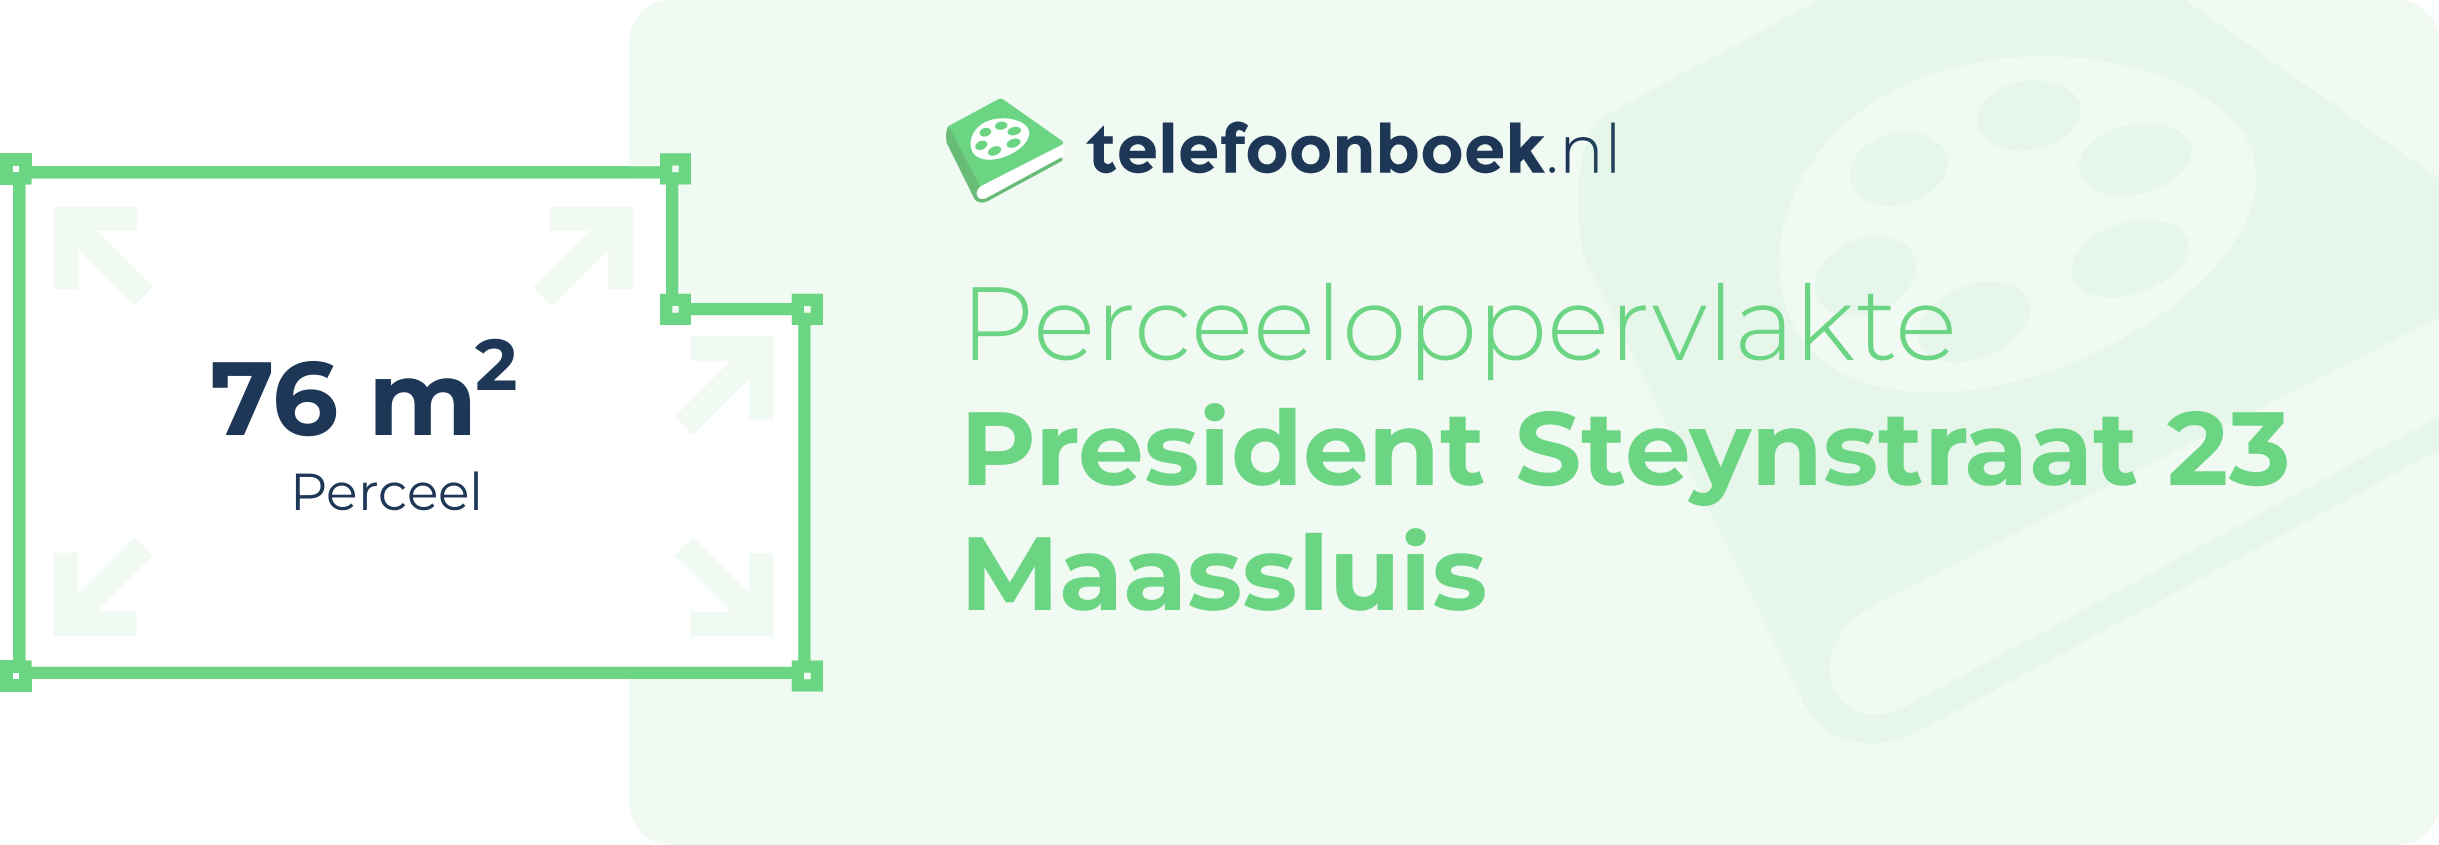 Perceeloppervlakte President Steynstraat 23 Maassluis